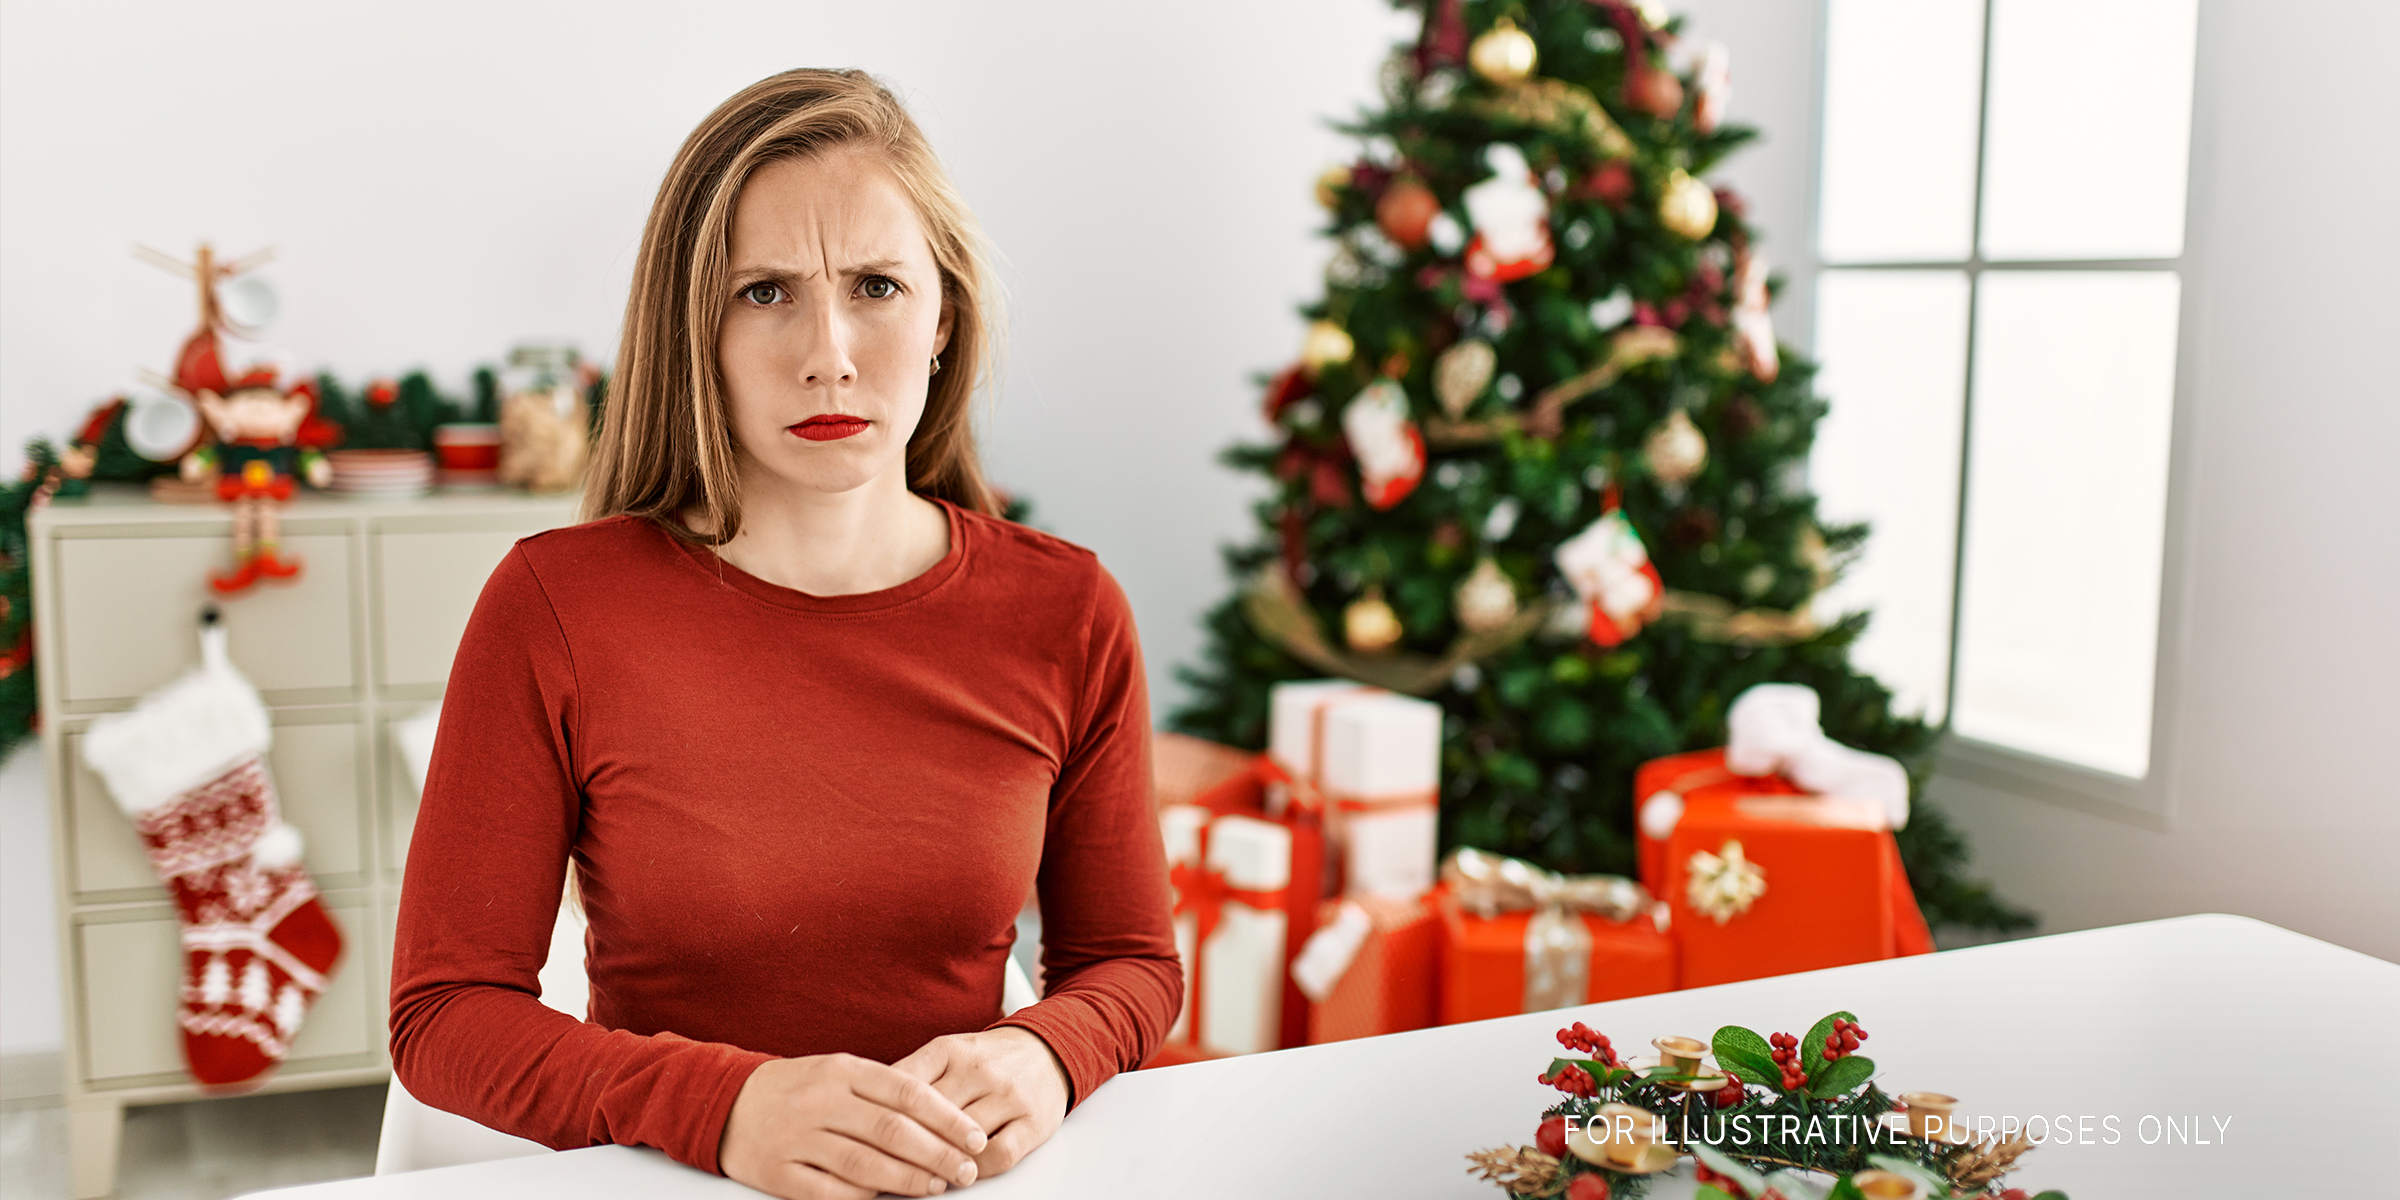 Une femme en colère debout devant un sapin de Noël | Source : Shutterstock